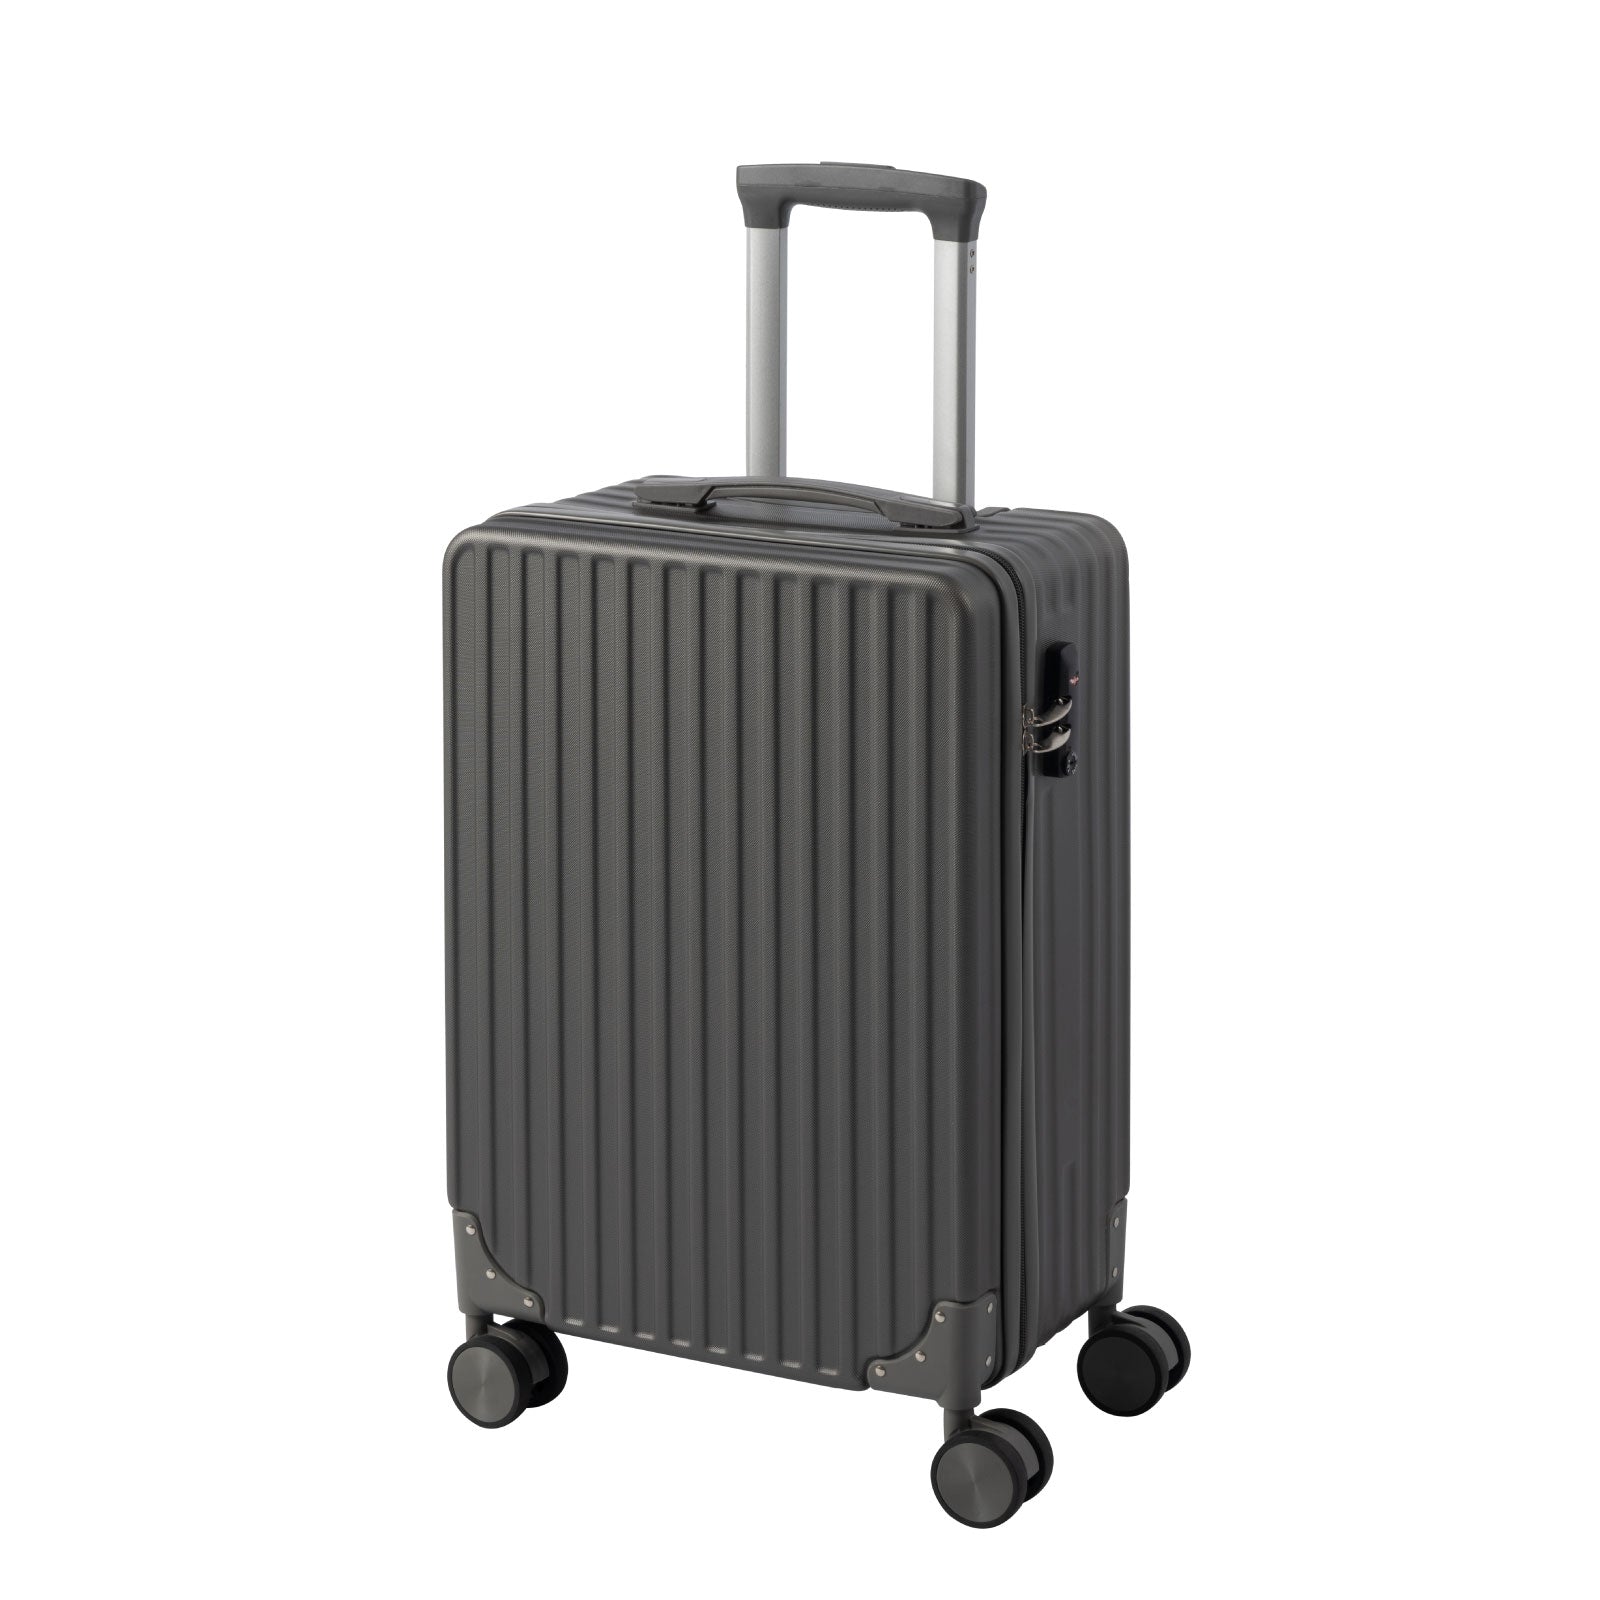 スーツケース キャリーケース キャリーバッグ 4カラー選ぶ Sサイズ 1-3日用 泊まる 軽量設計 大容量 トランク 修学旅行 海外旅行 国内旅行 sc109-20